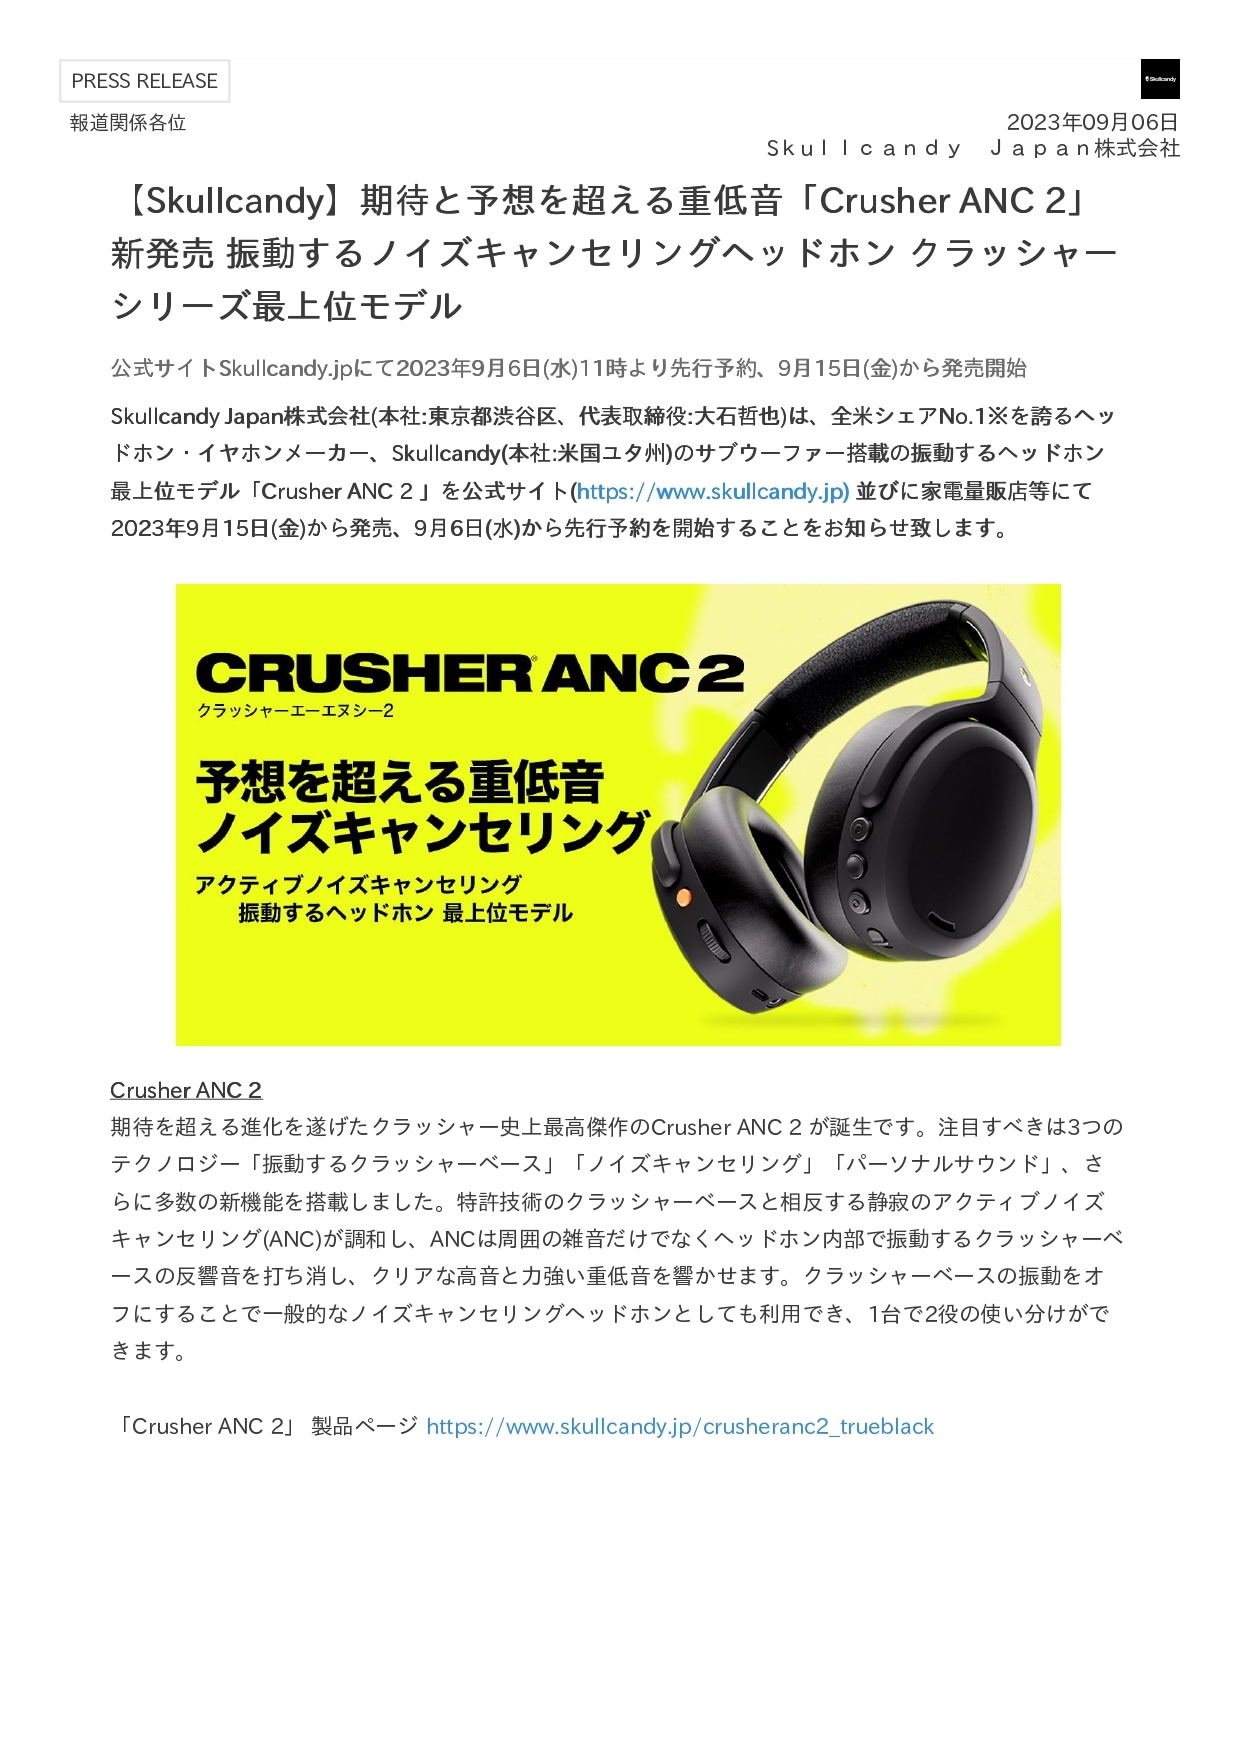 Crusher ANC2 ノイズキャンセリング ワイヤレスヘッドホン 重低音検討させていただきます